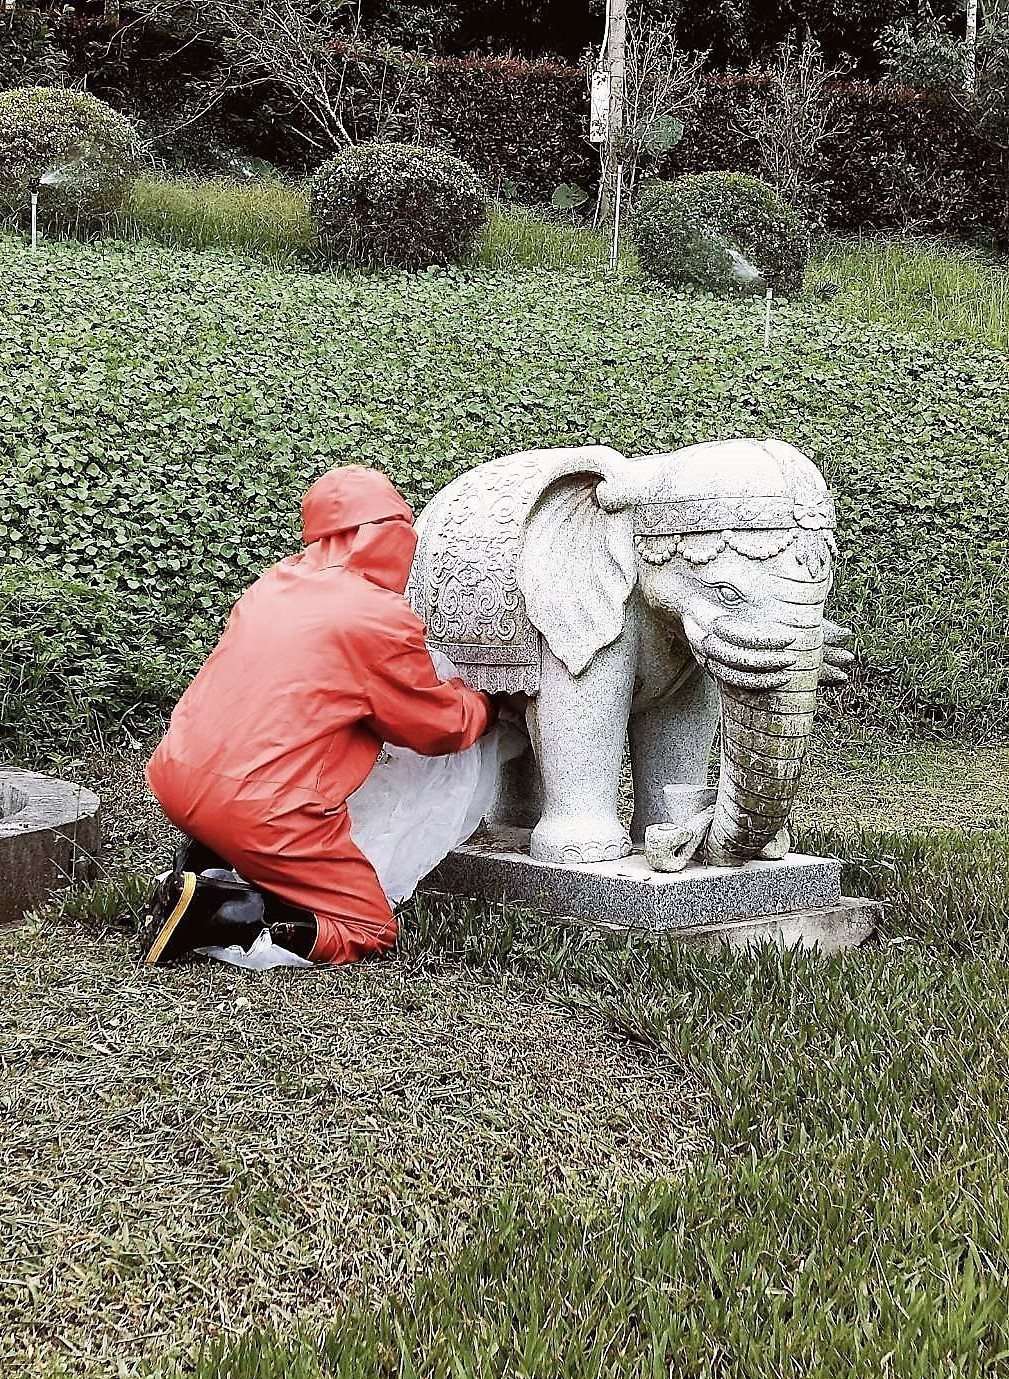 石雕大象「生了」一窩虎頭蜂 專家提醒要小心